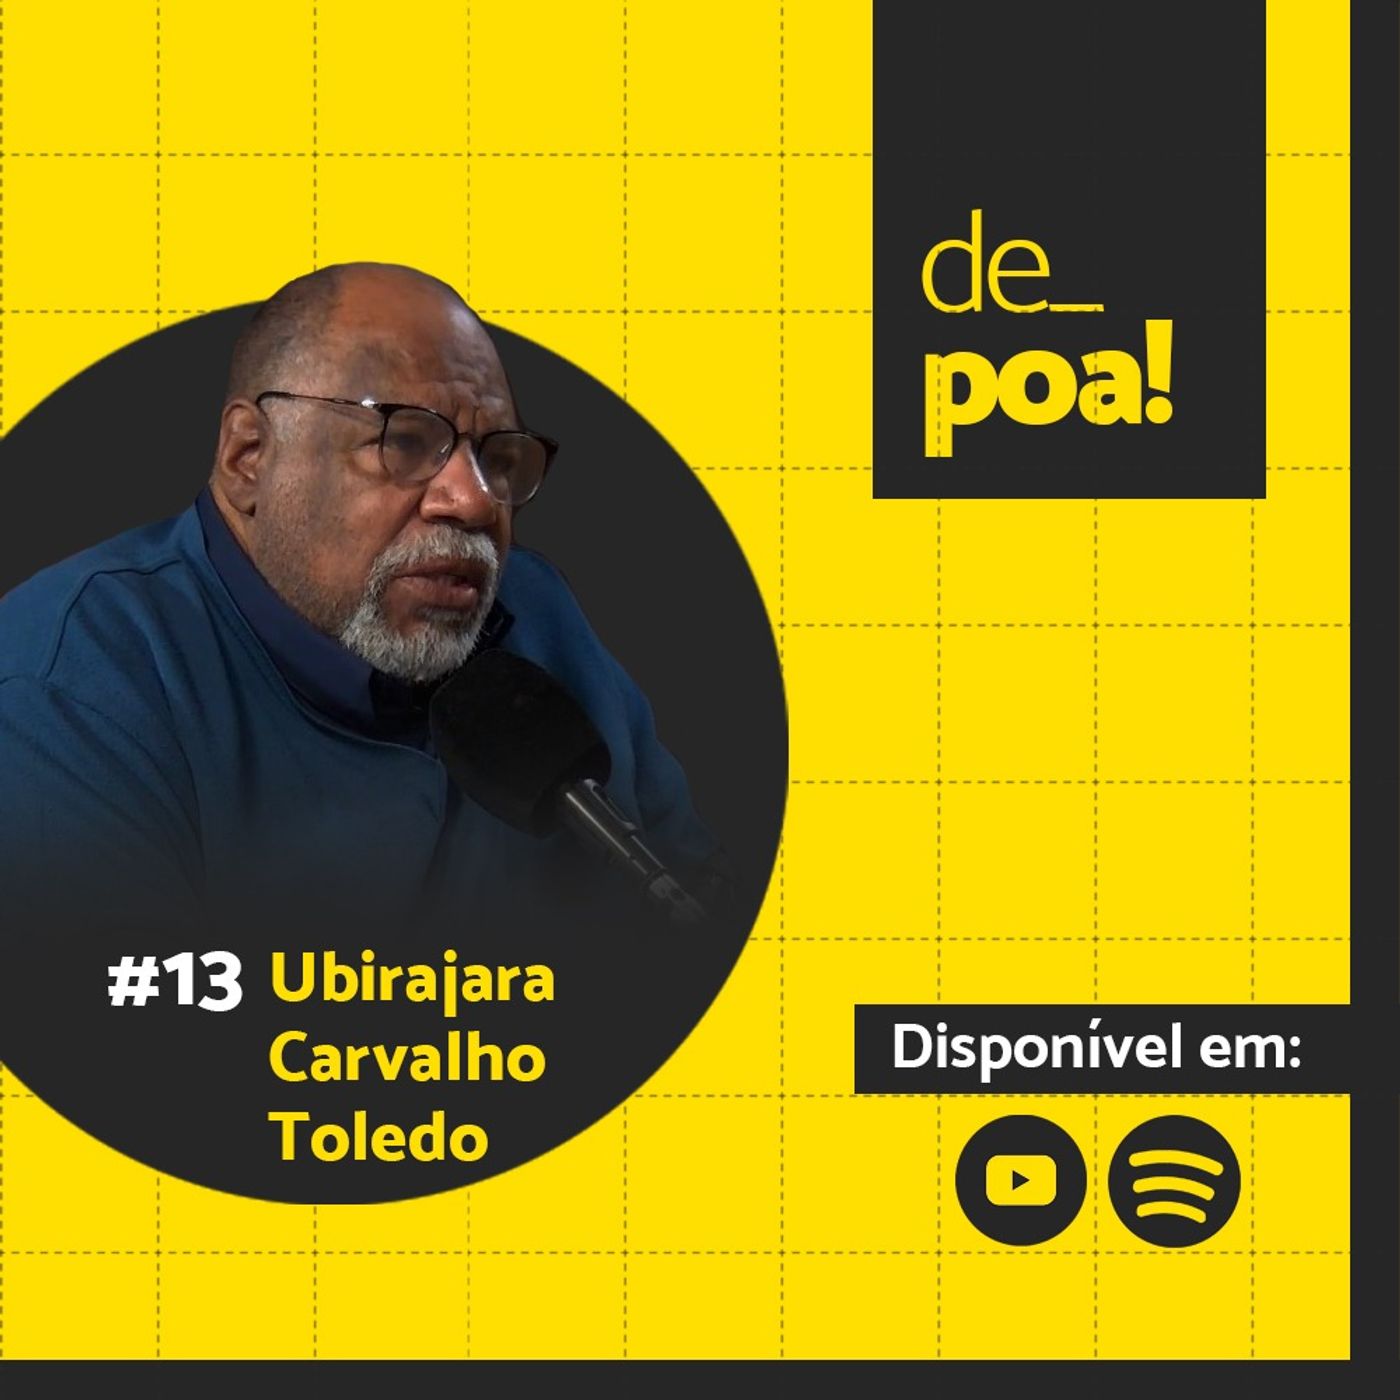 De Poa com Ubirajara Carvalho Toledo